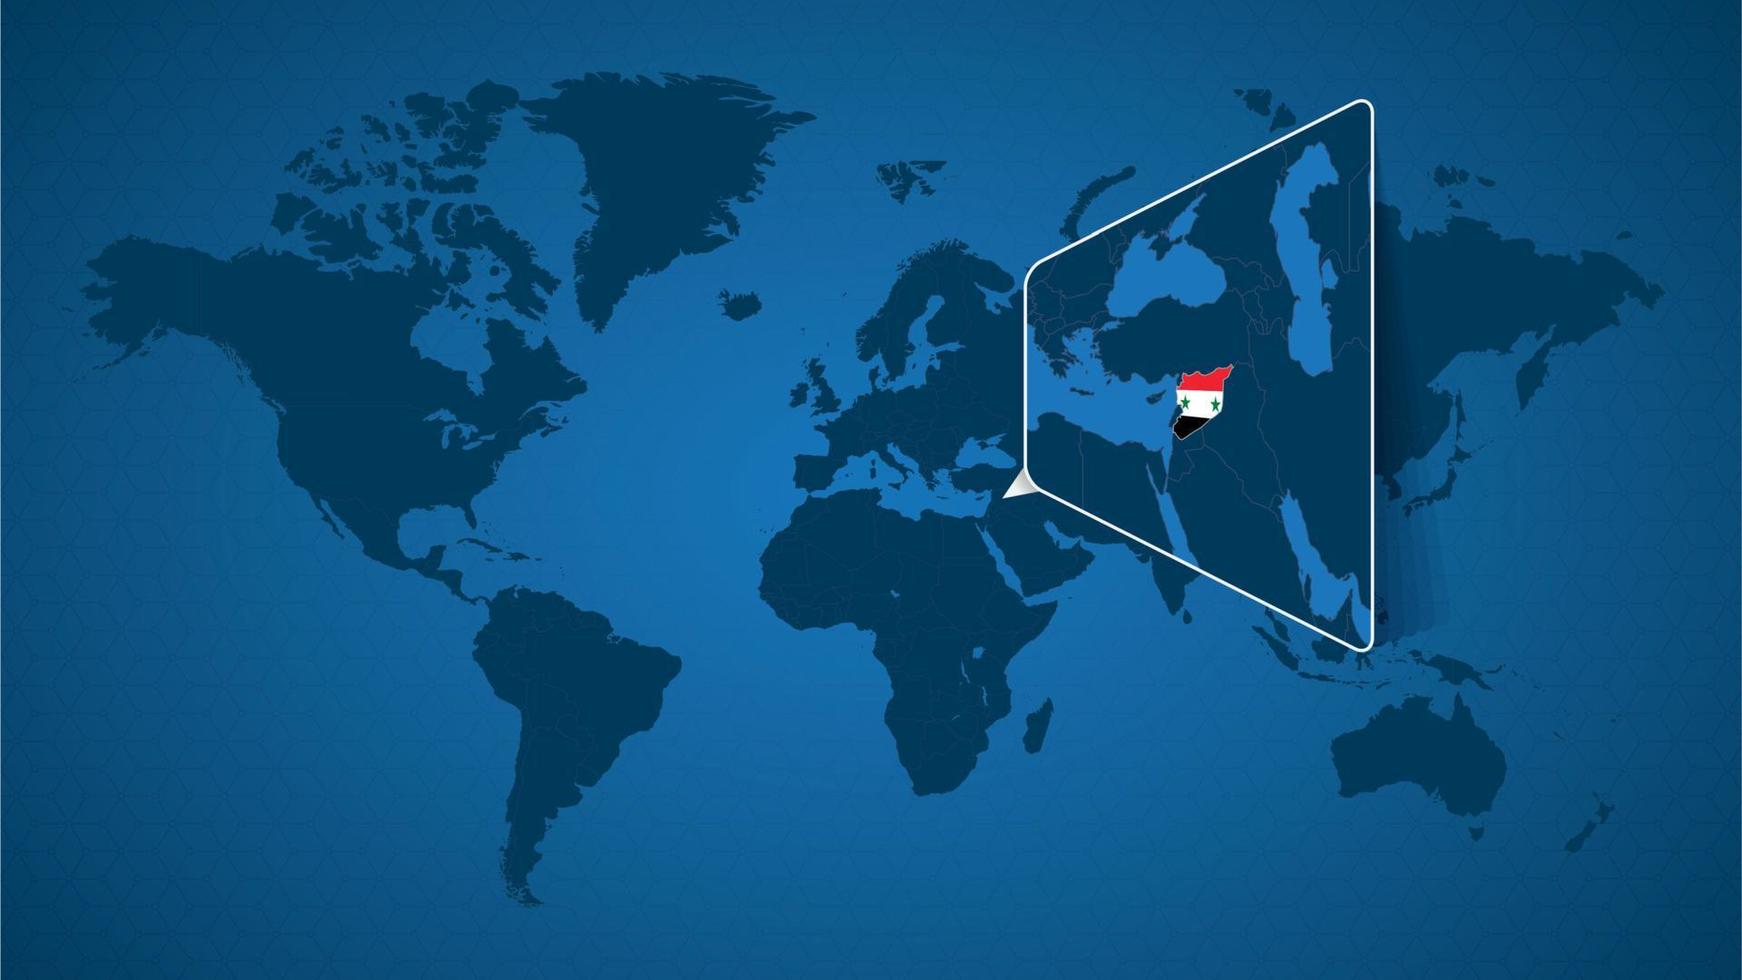 mappa del mondo dettagliata con mappa ingrandita appuntata della siria e dei paesi vicini. vettore